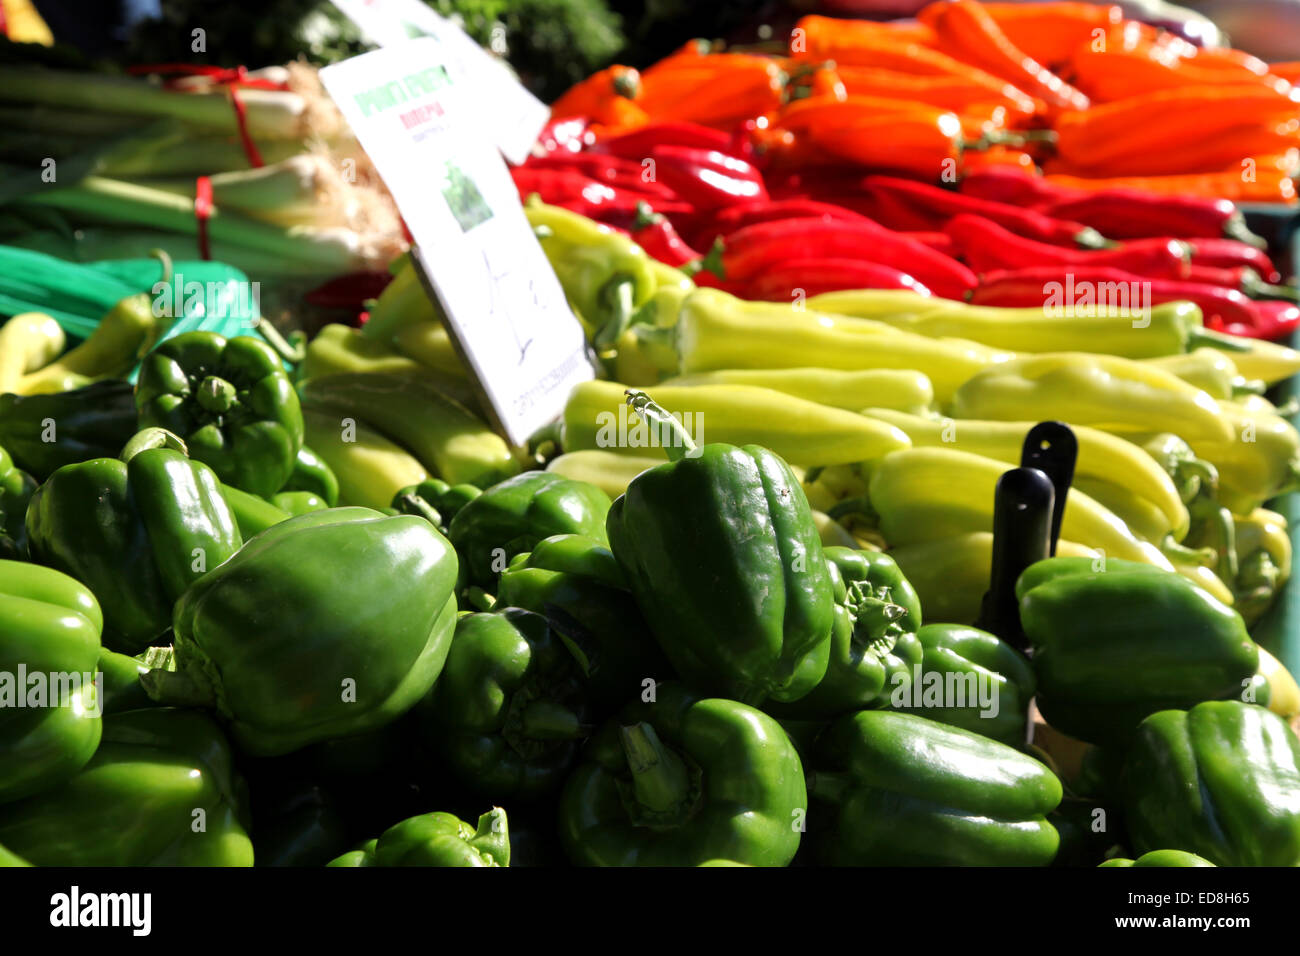 Vivaci e colorati di verdure su un mercato in stallo in creta, arancione, rosso e verde lime e il verde scuro dei peperoni dolci guardare delizioso Foto Stock